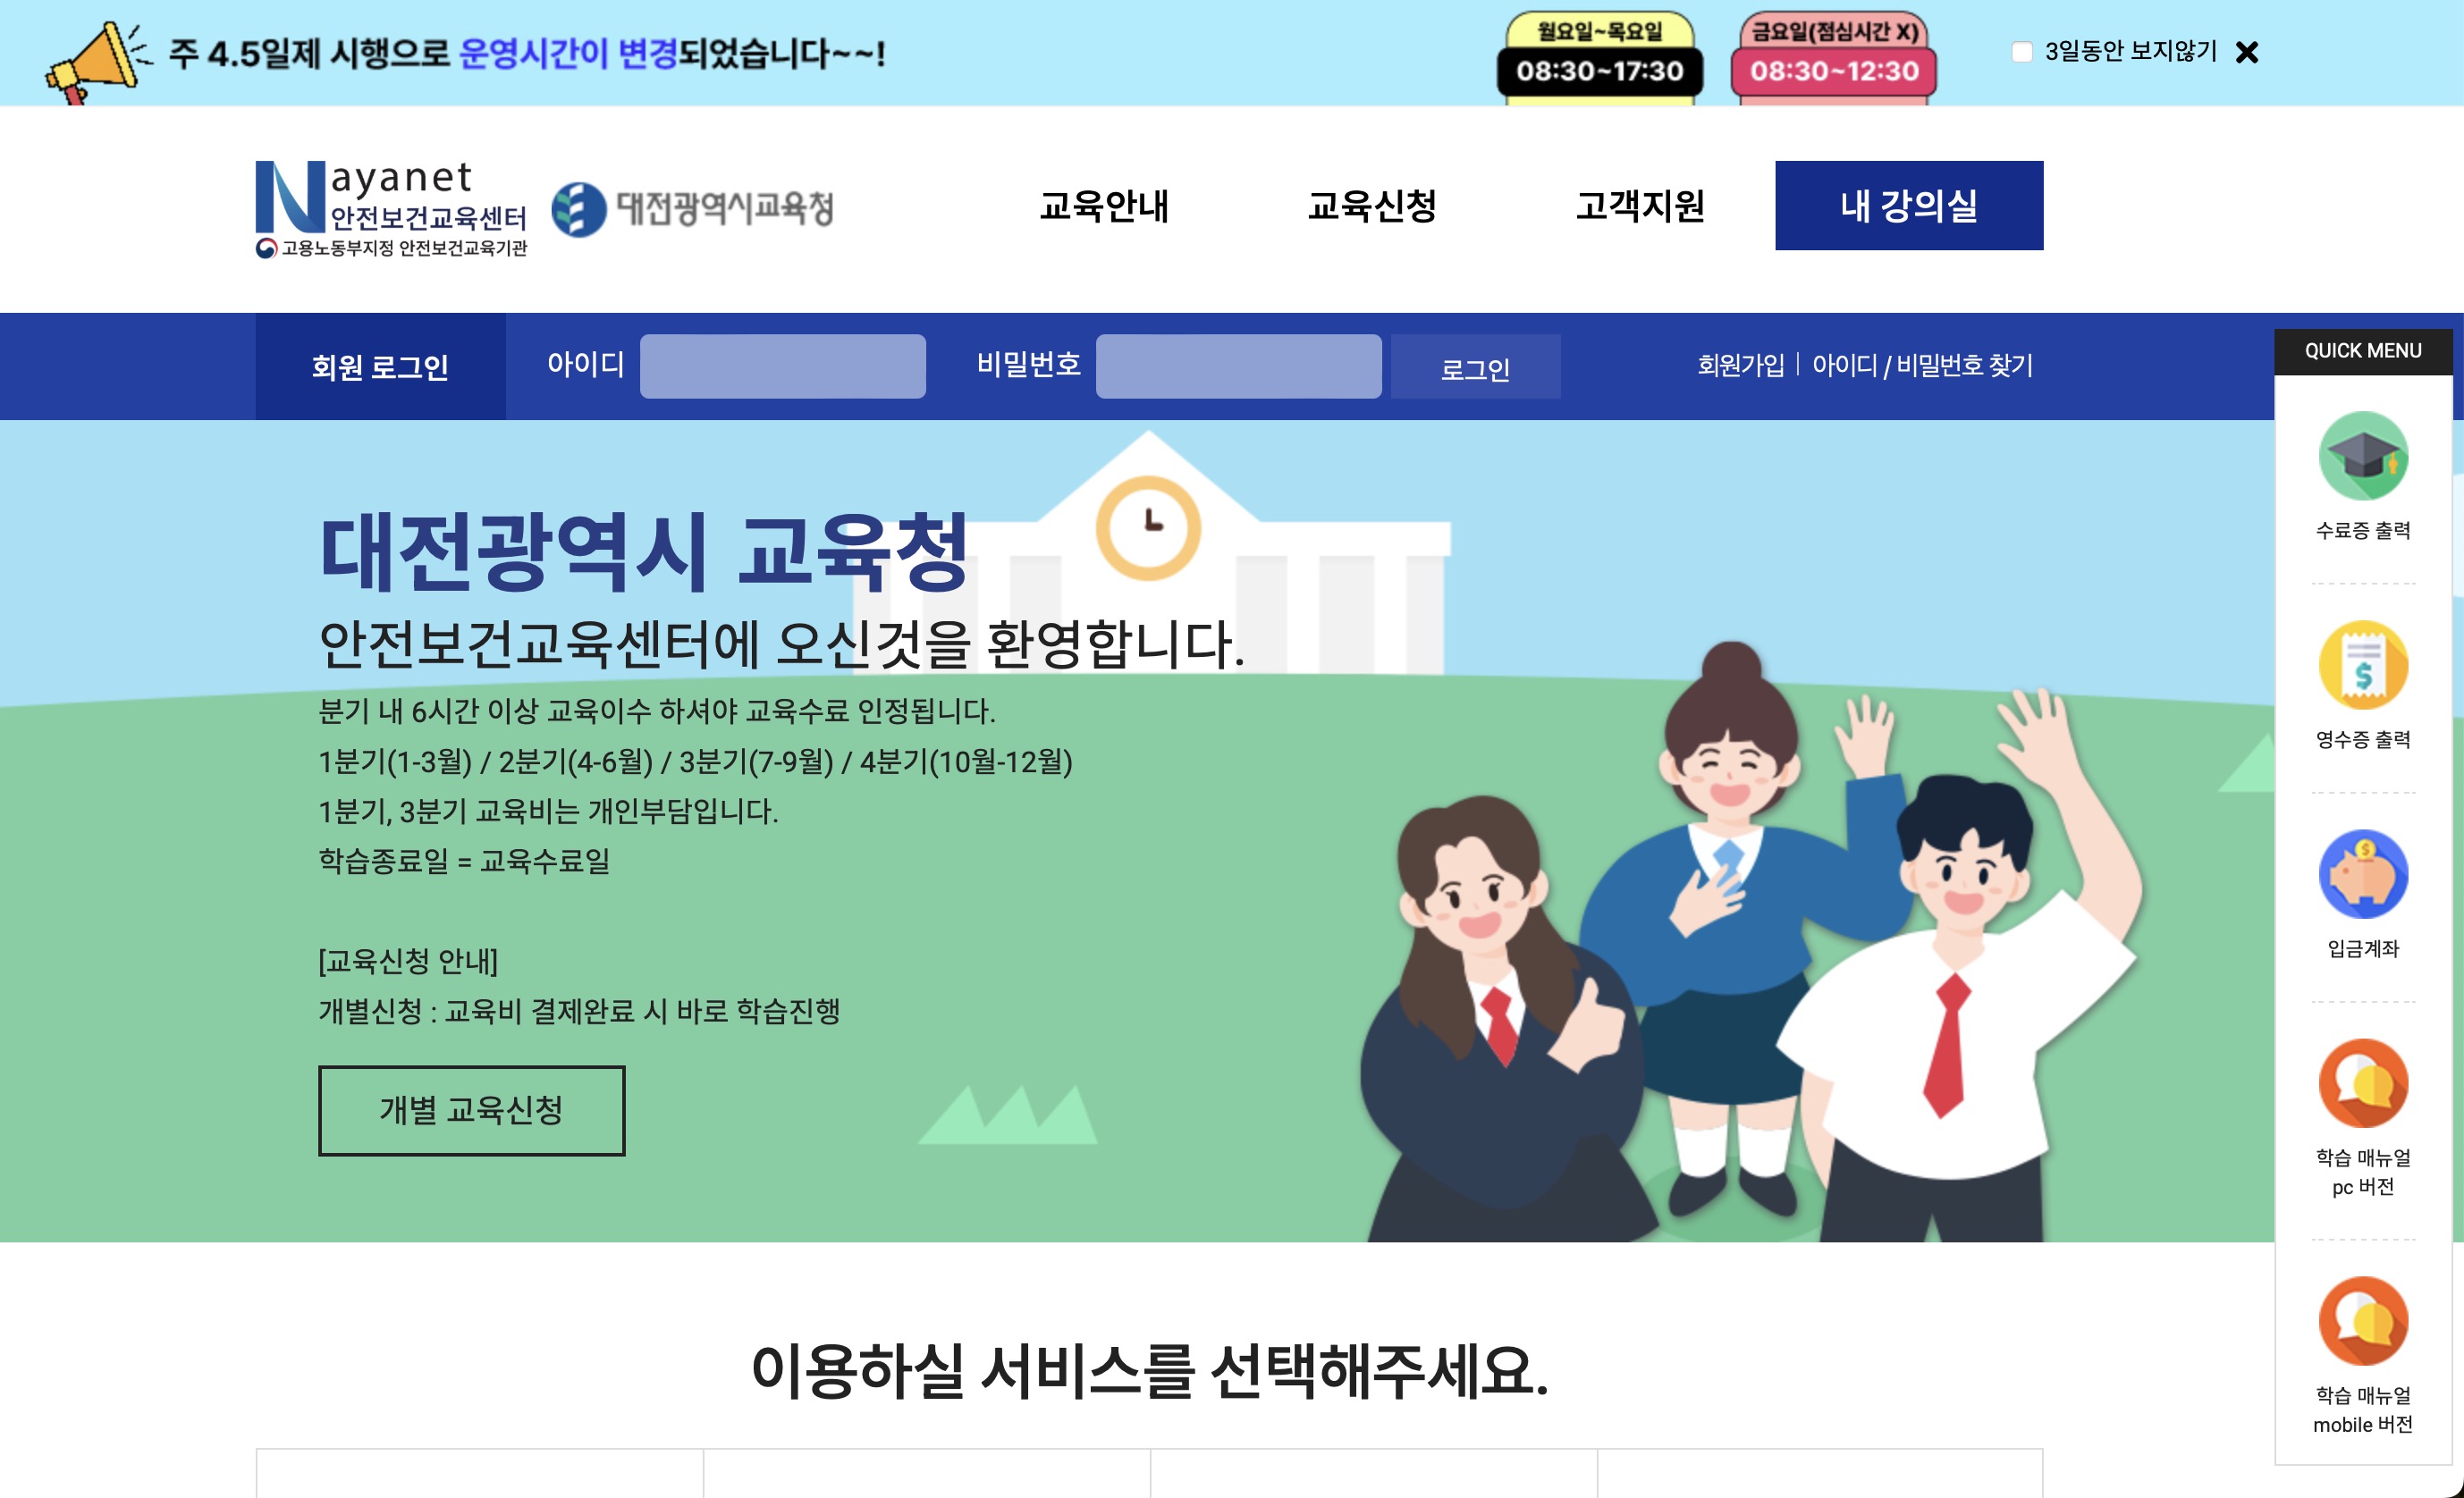 대전광역시 교육청 나야넷 안전보건교육센터